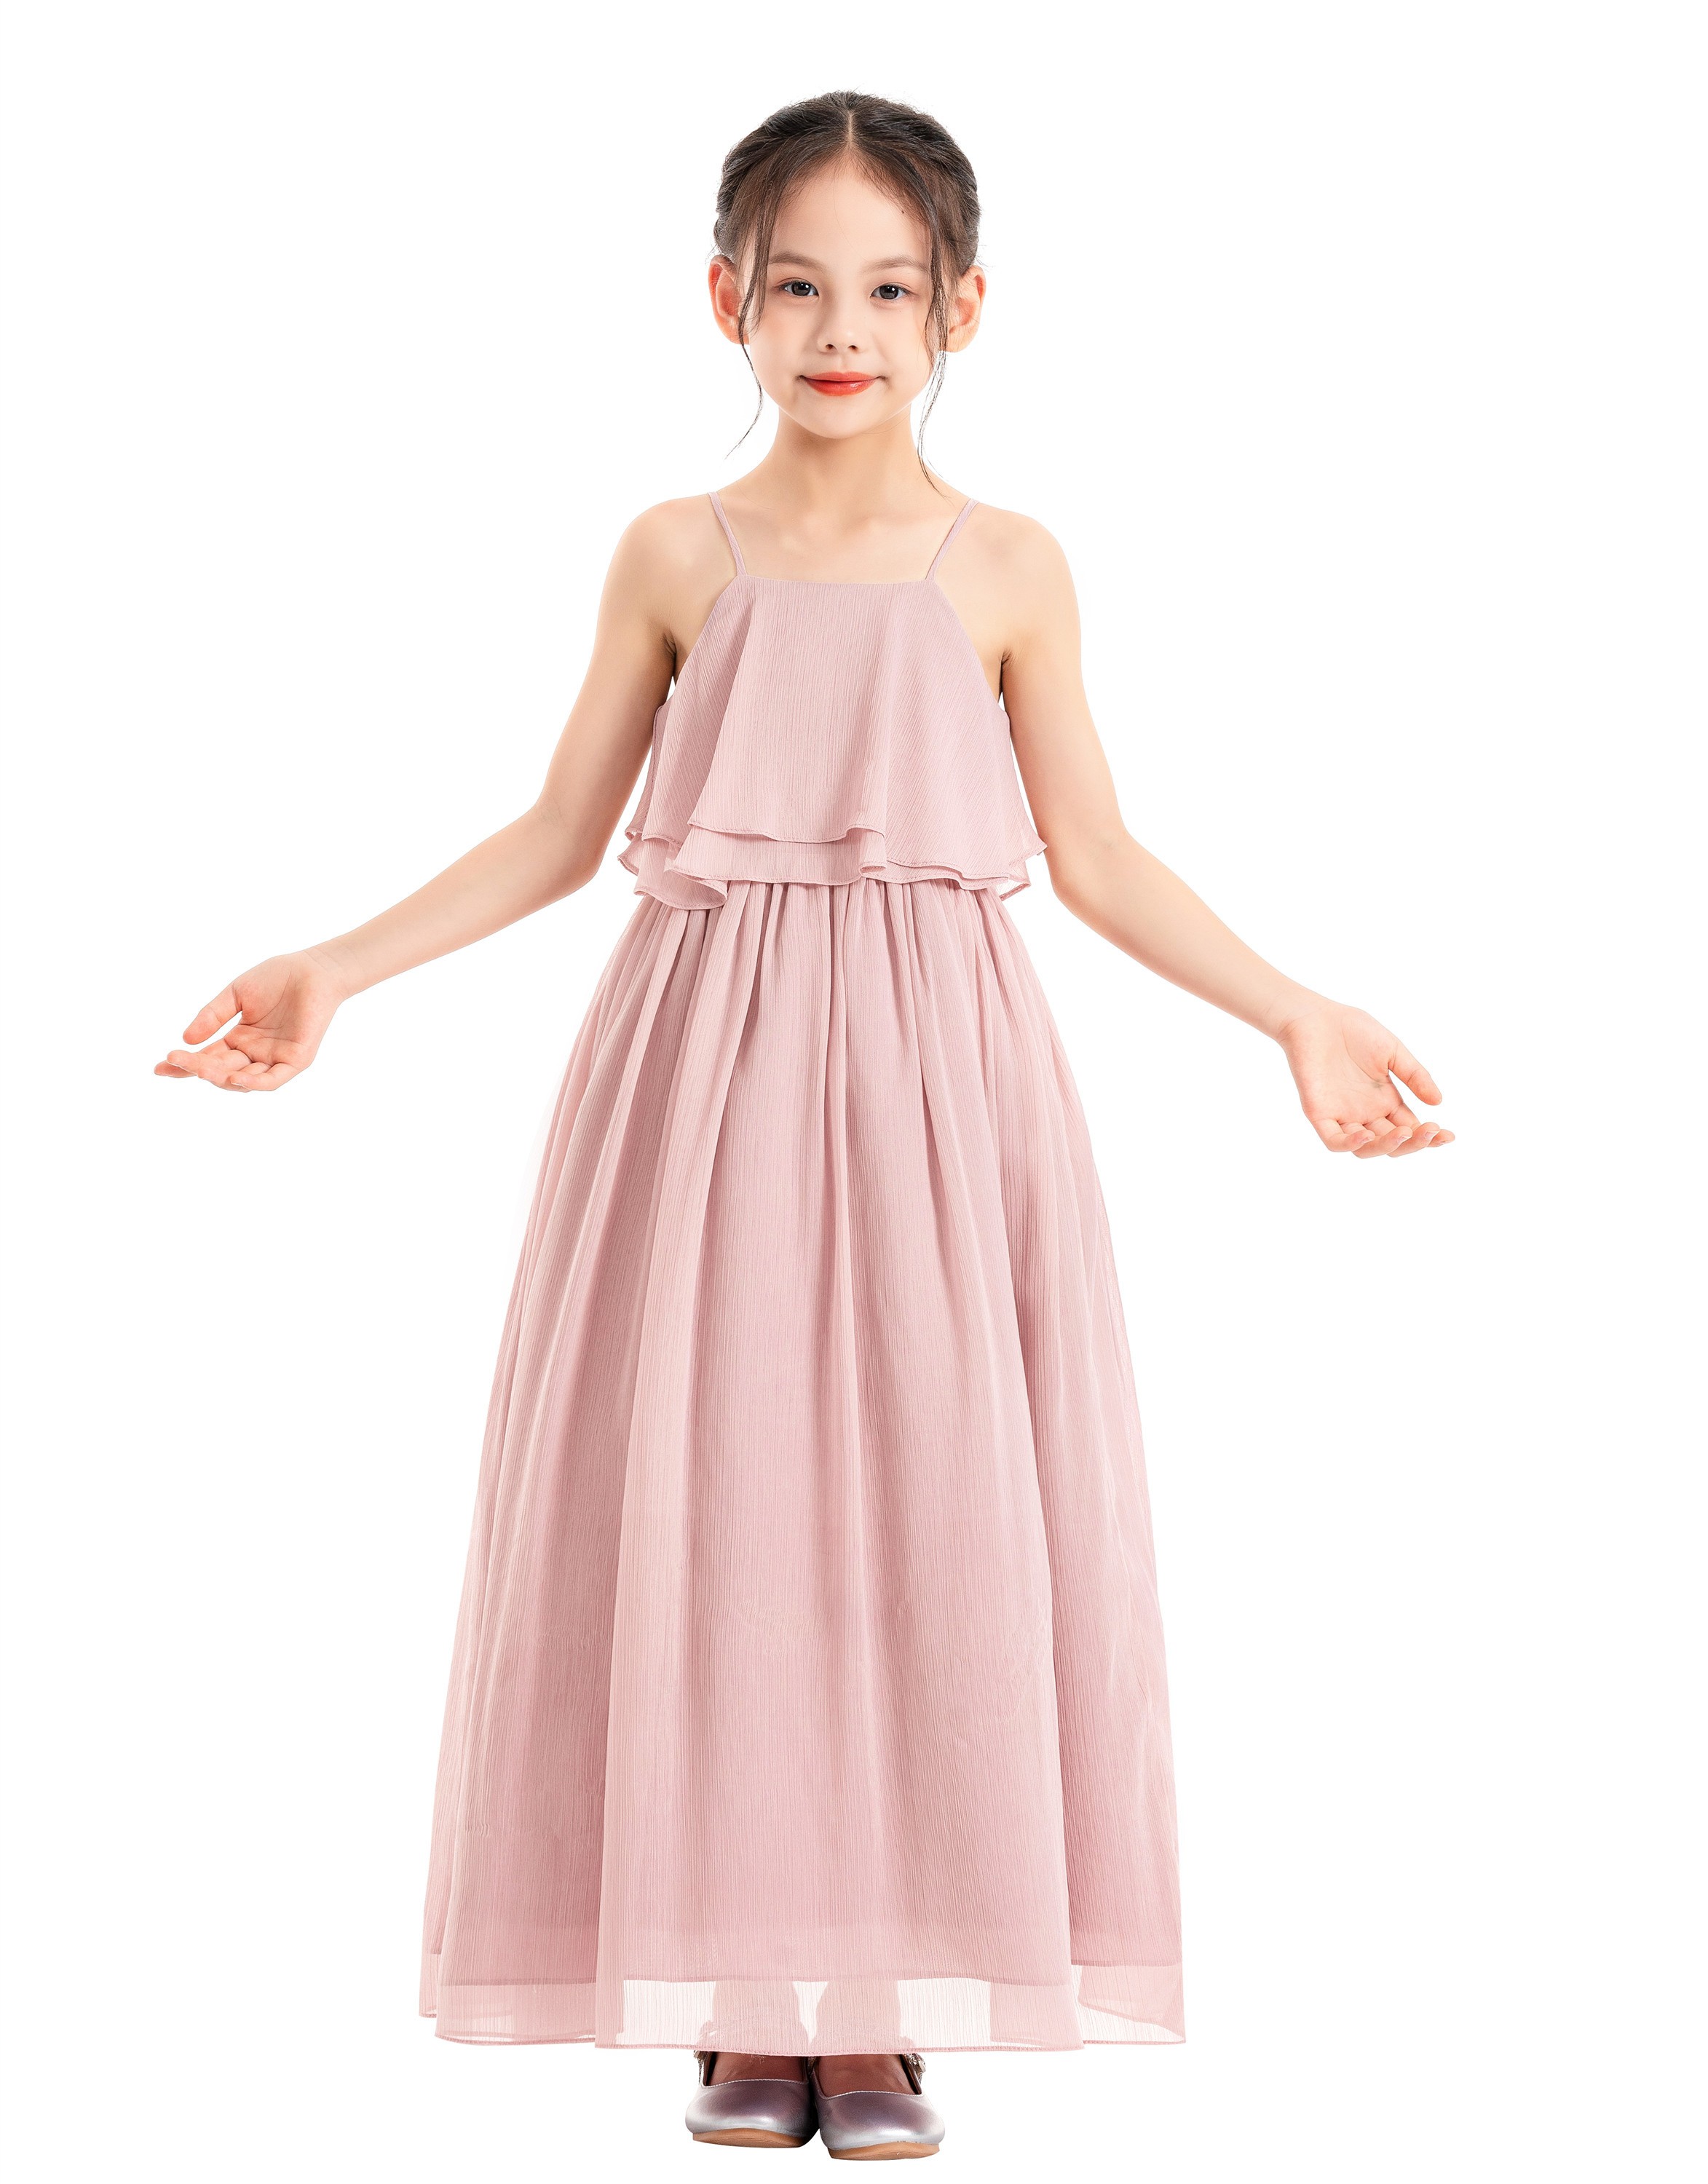 Blush Pink A-Line Ruffle Chiffon Dress Chiffon Flower Girl Dress 192